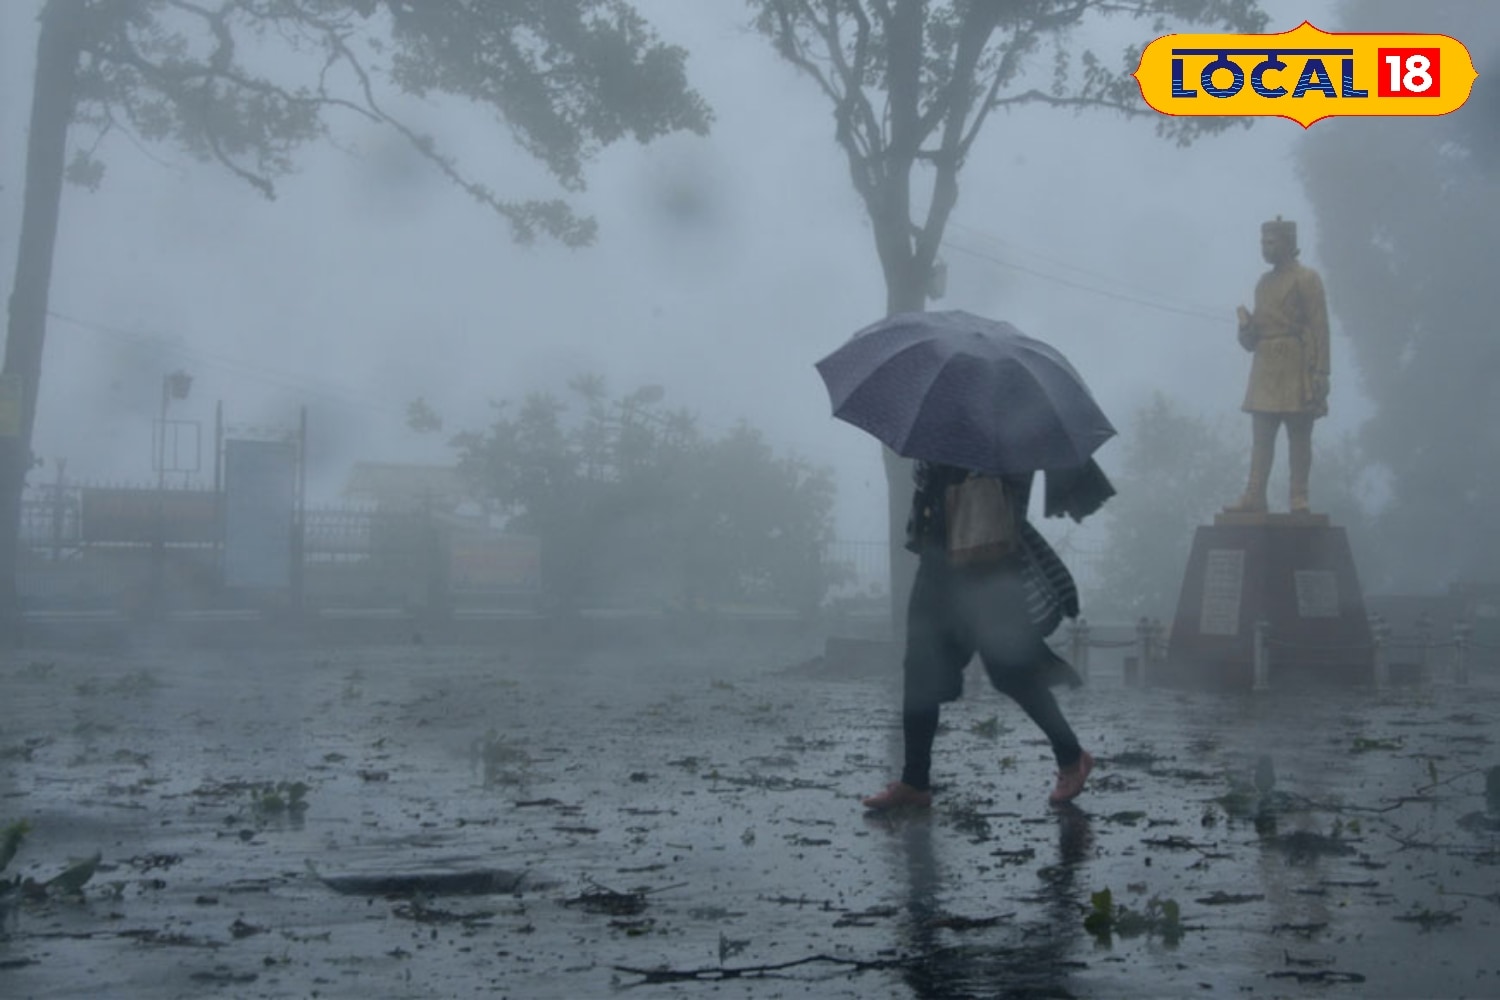 Bengal Rain Forecast: উত্তরবঙ্গে আগামী কয়েকদিন বৃষ্টি চলবে। একের পর এক পশ্চিমী ঝঞ্ঝার প্রভাবে বৃষ্টি উত্তরবঙ্গে। মূলত বজ্রবিদ্যুৎ-সহ হালকা থেকে মাঝারি বৃষ্টির সম্ভাবনা। দার্জিলিং, কালিম্পং, আলিপুরদুয়ার, কোচবিহার ও জলপাইগুড়ি জেলাতে বৃষ্টির সম্ভাবনা বেশি। 